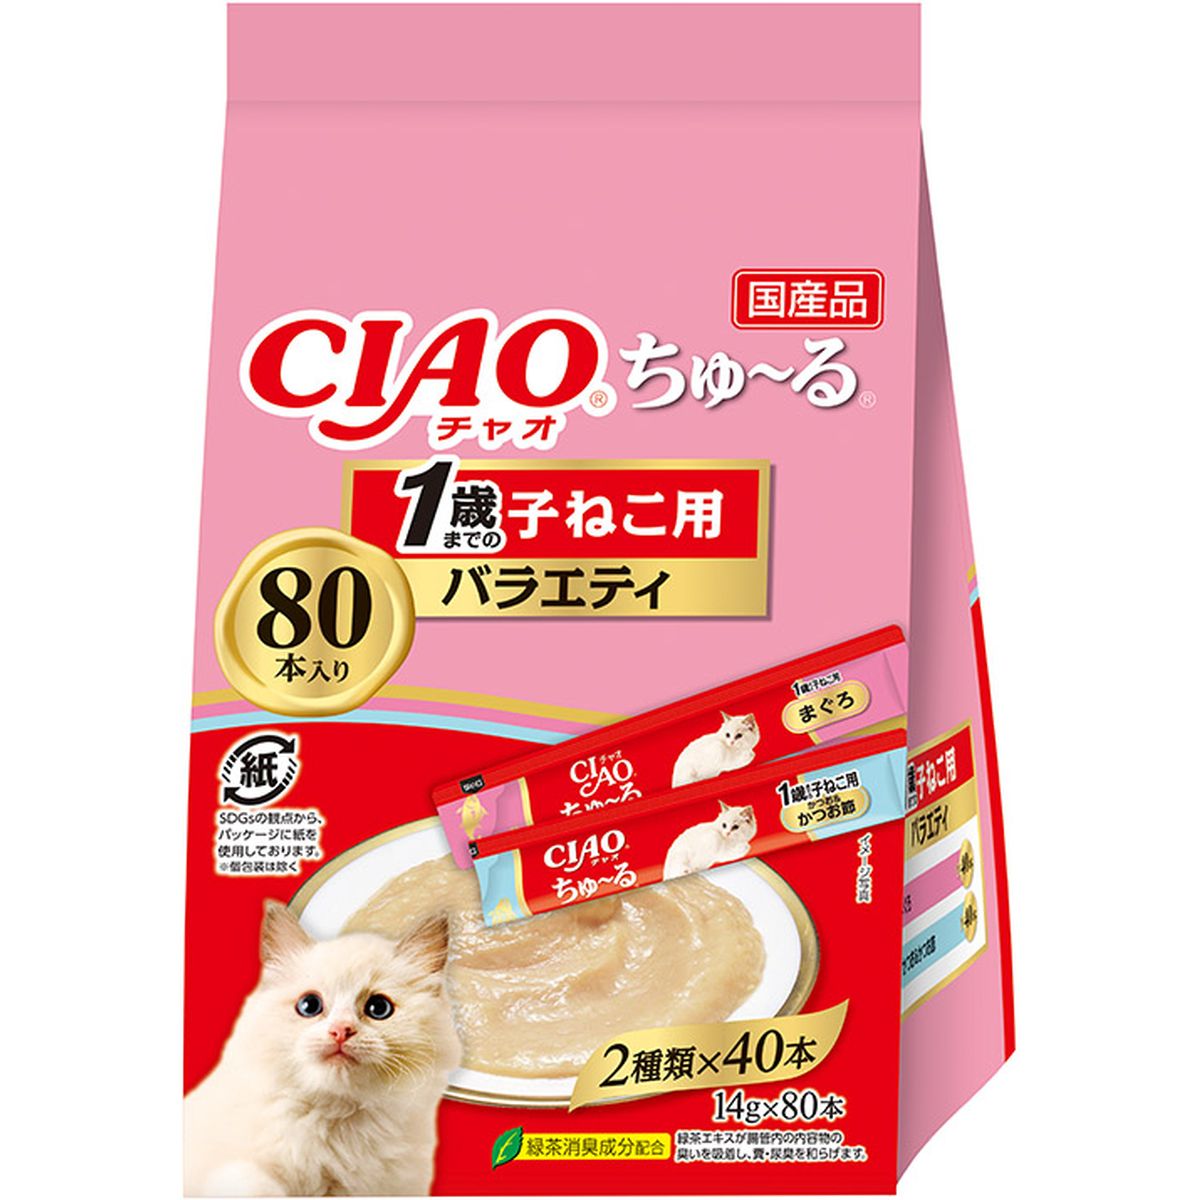 CIAO チュール 1歳マデノ子ネコ用バラエティ 14g×80本×6